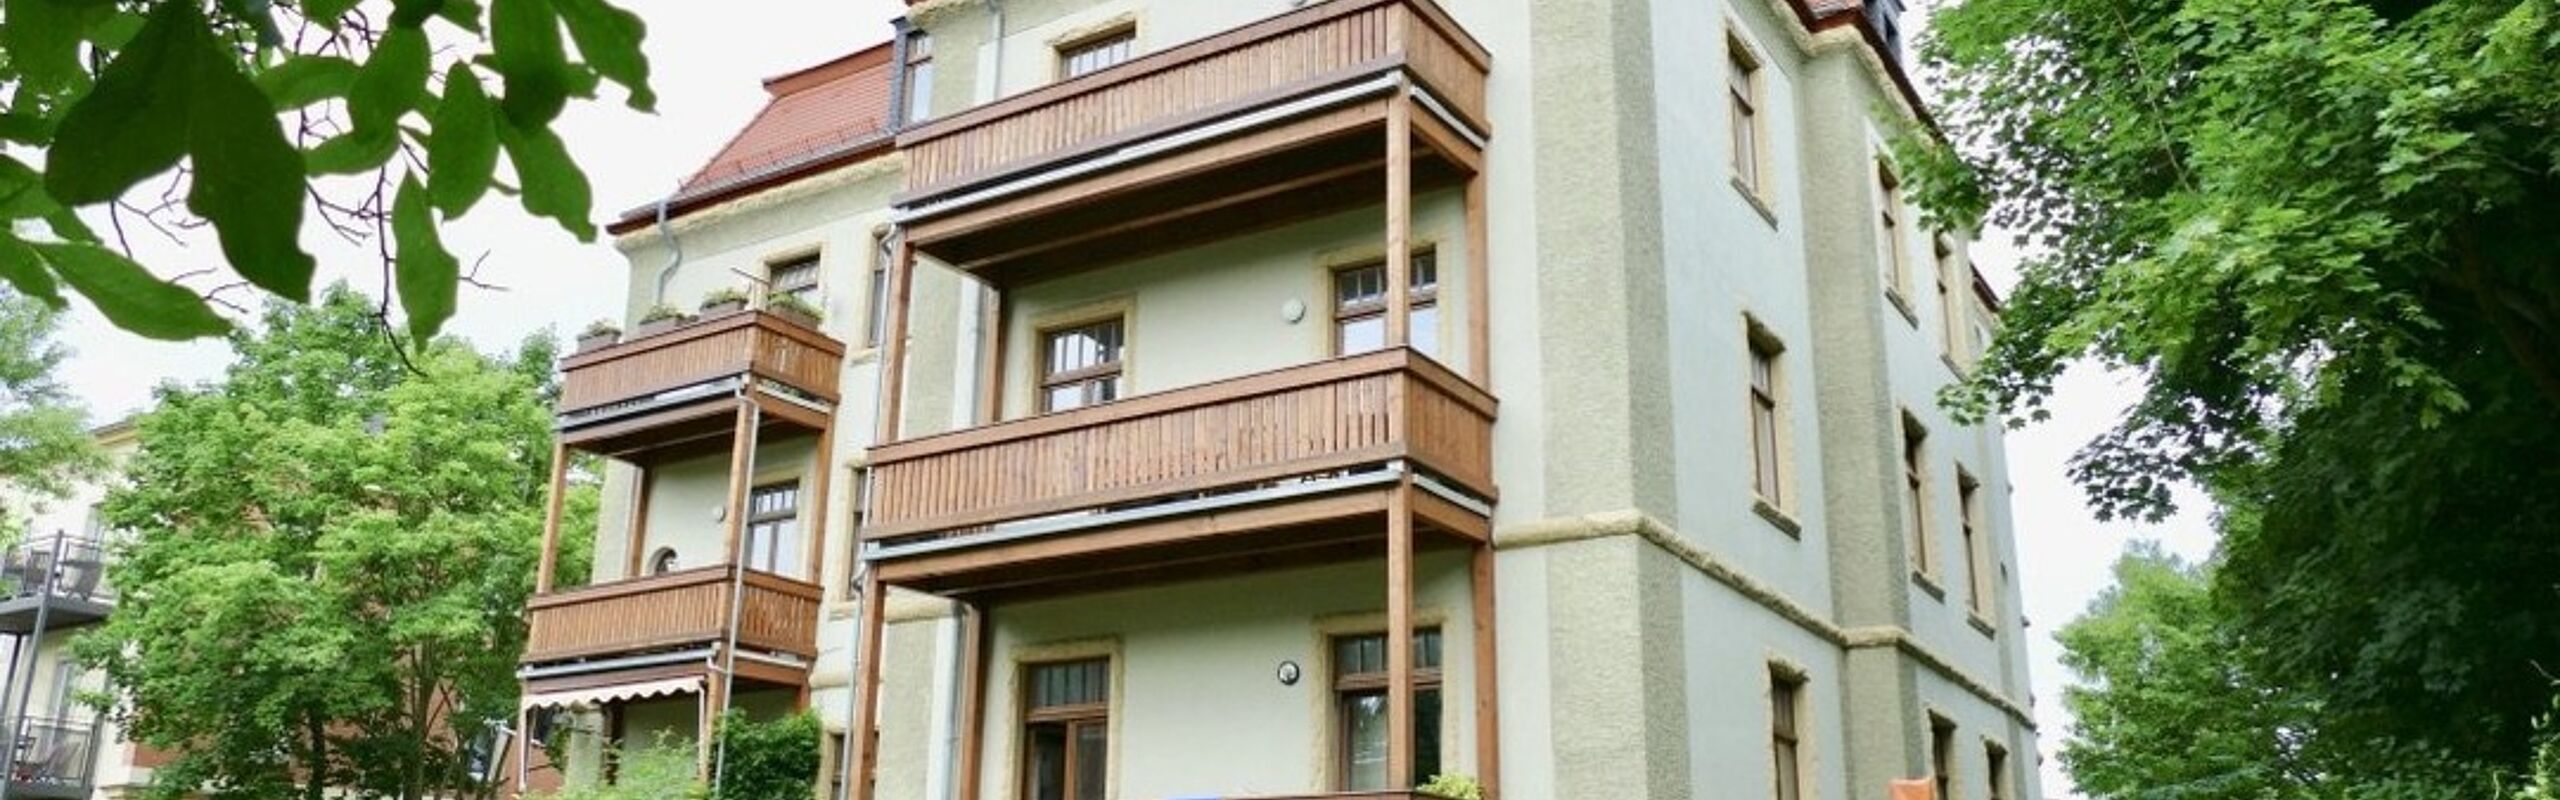 +++ Attraktive 3-Raum-Wohnung mit Balkon in familienfreundlicher Umgebung +++